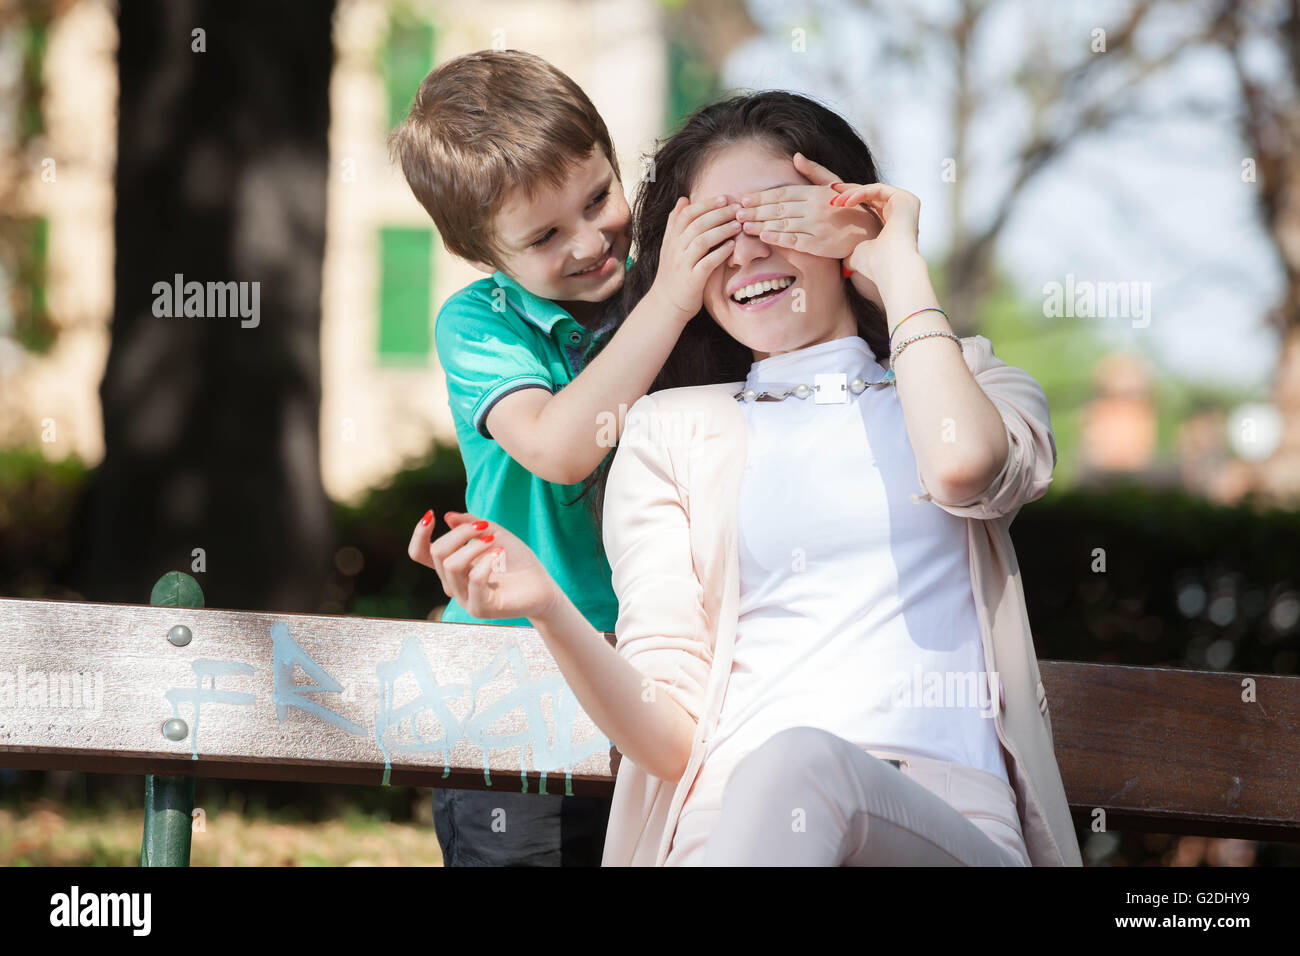 Garçon enfant jouant dans le parc devinez qui avec sa jeune maman ou tante Banque D'Images